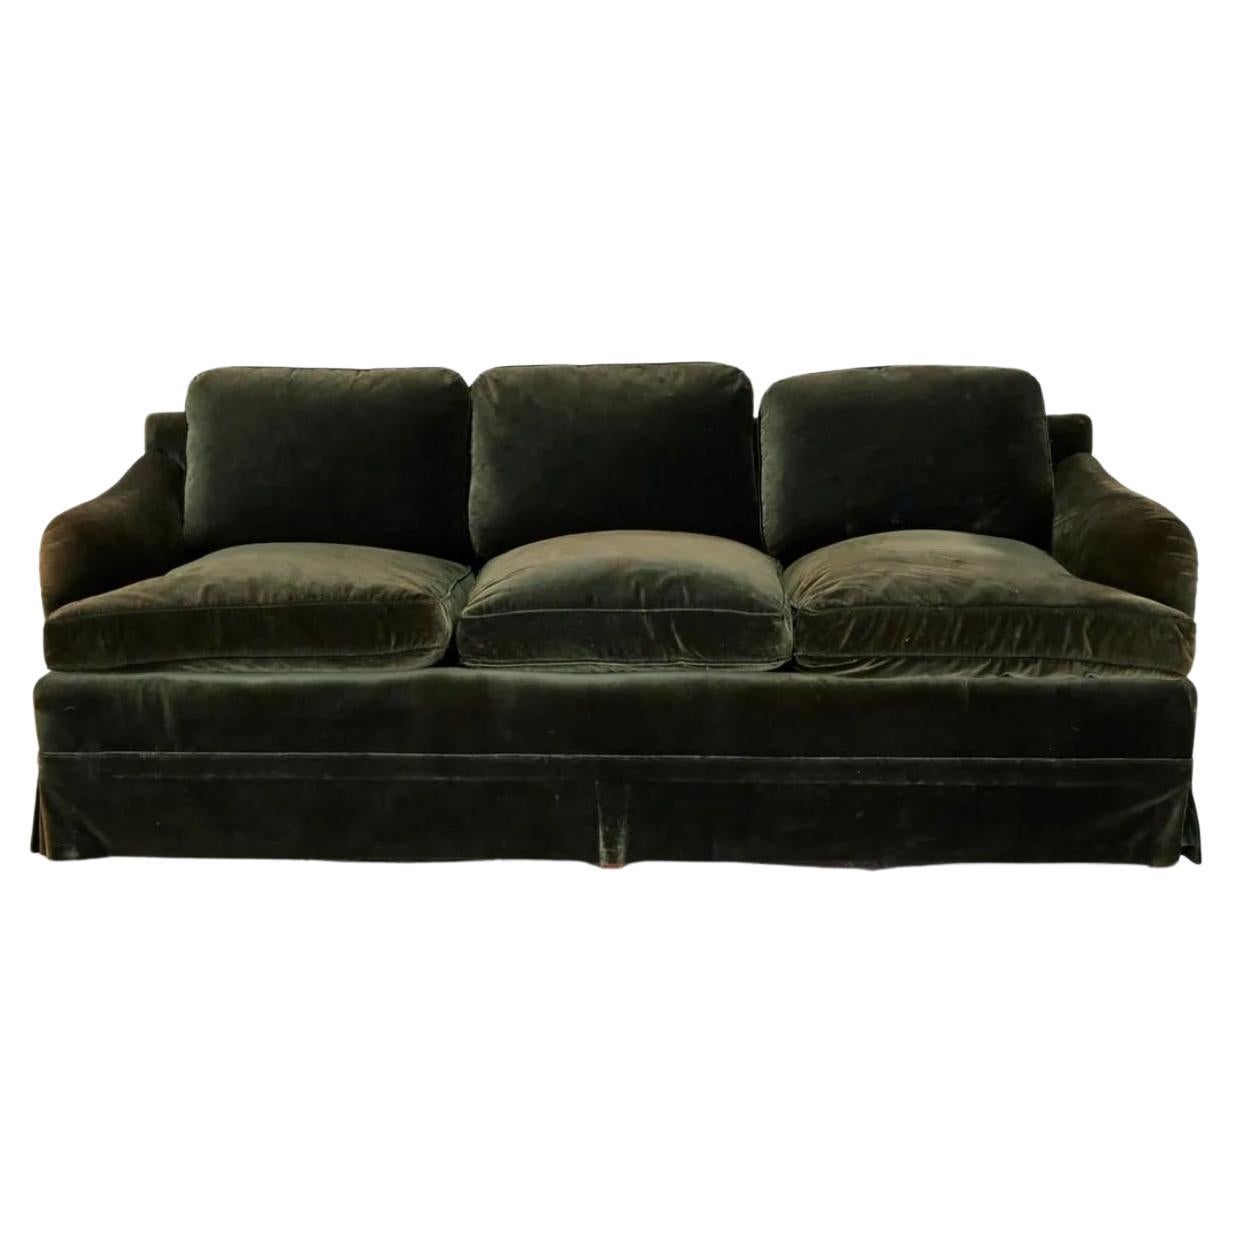 Canapé 3 places à accoudoirs en velours vert mousse du 20e siècle, de style anglais